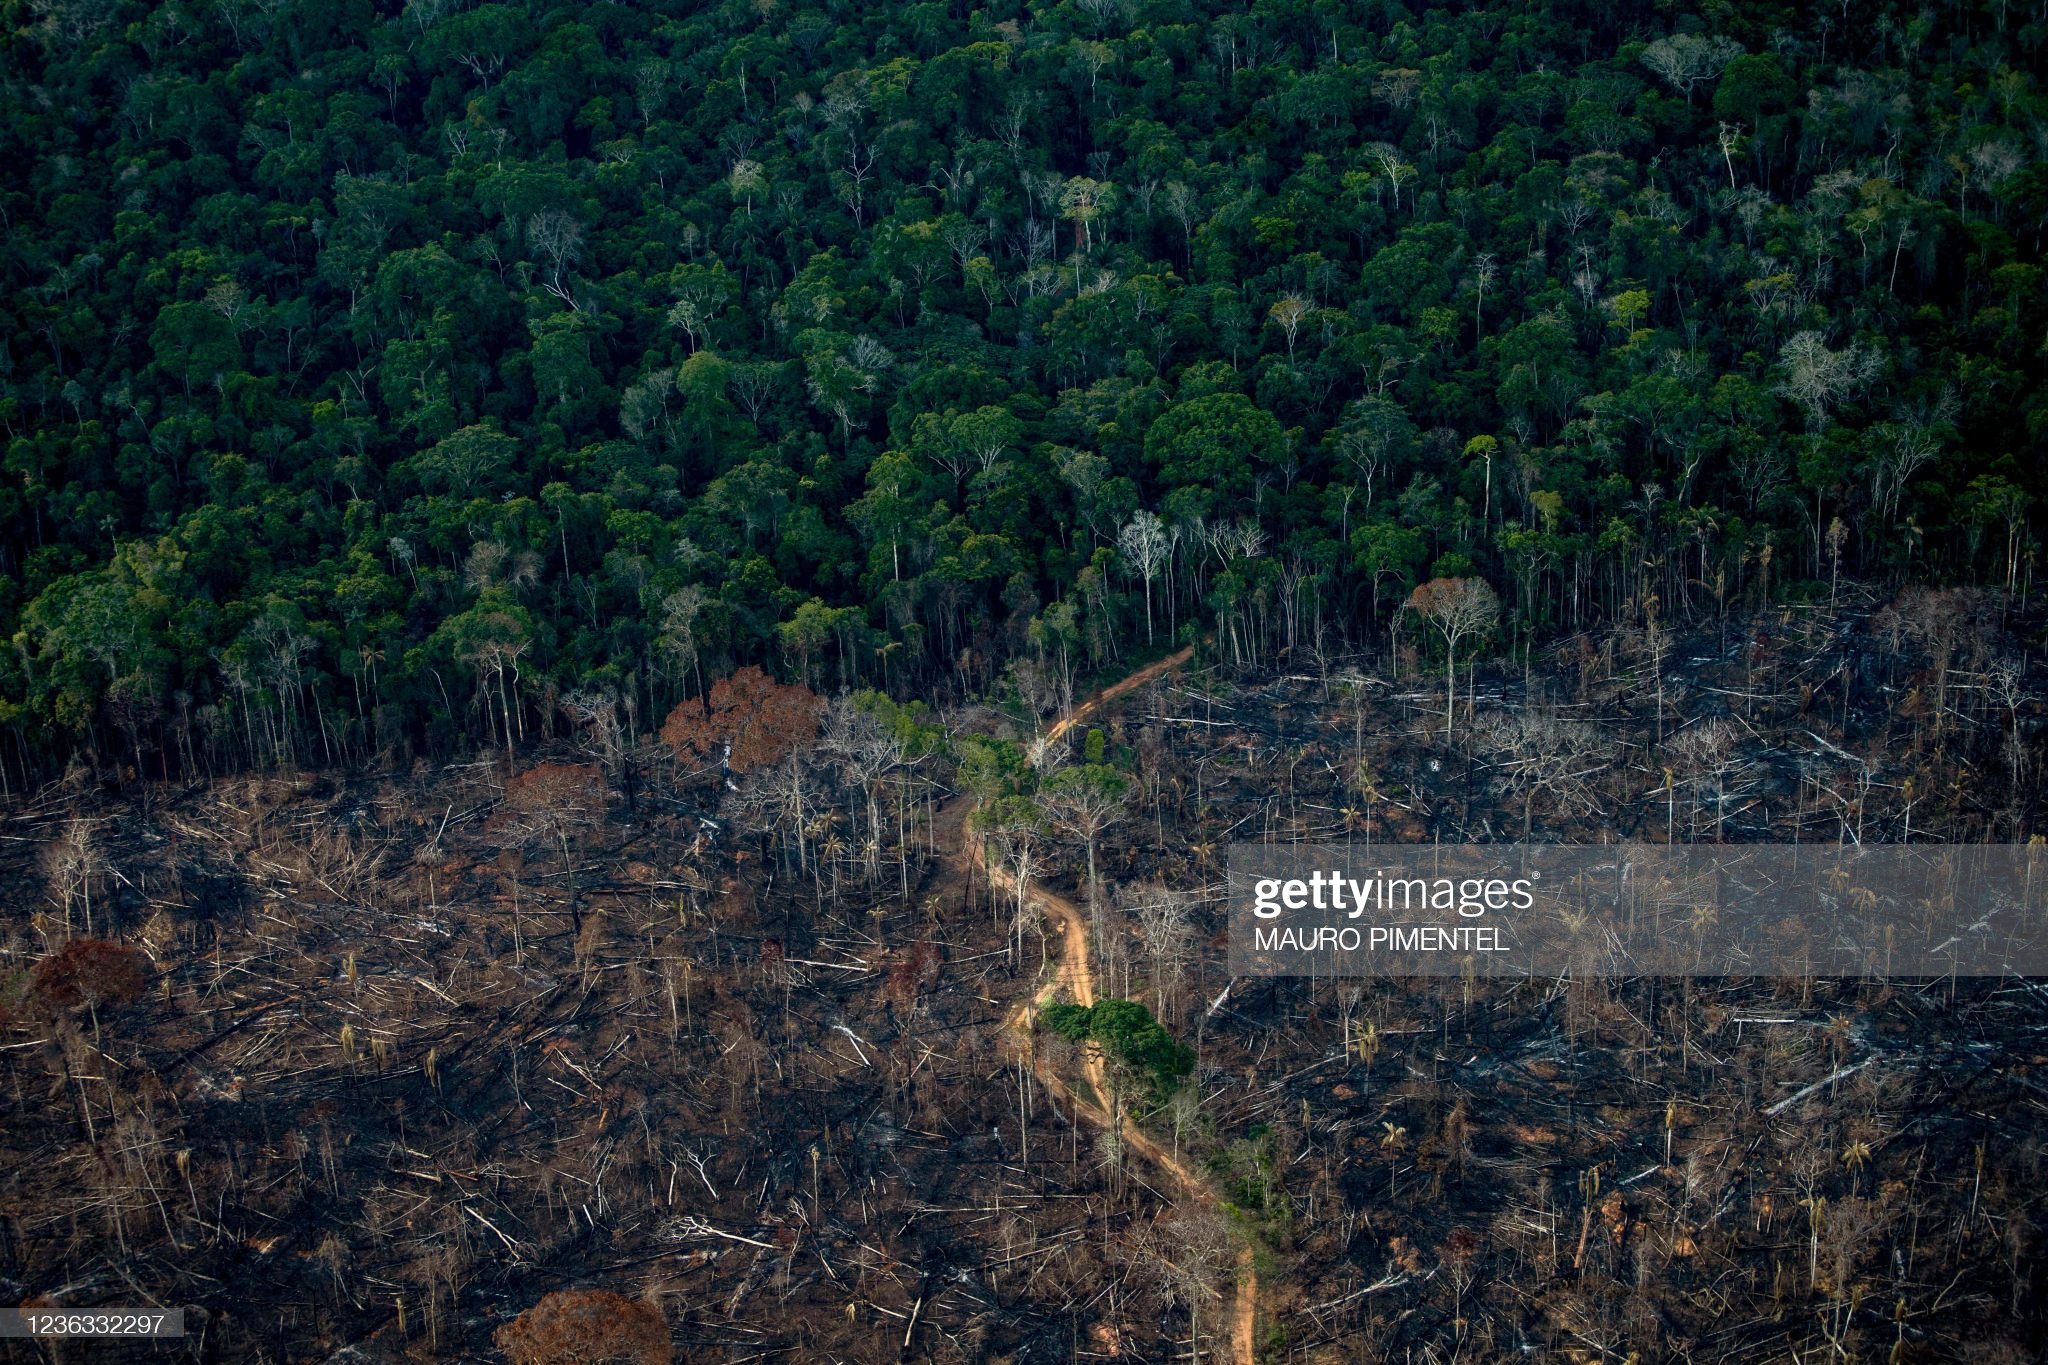 https://thenewglobalorder.com/wp-content/uploads/2022/08/deforestation.jpg